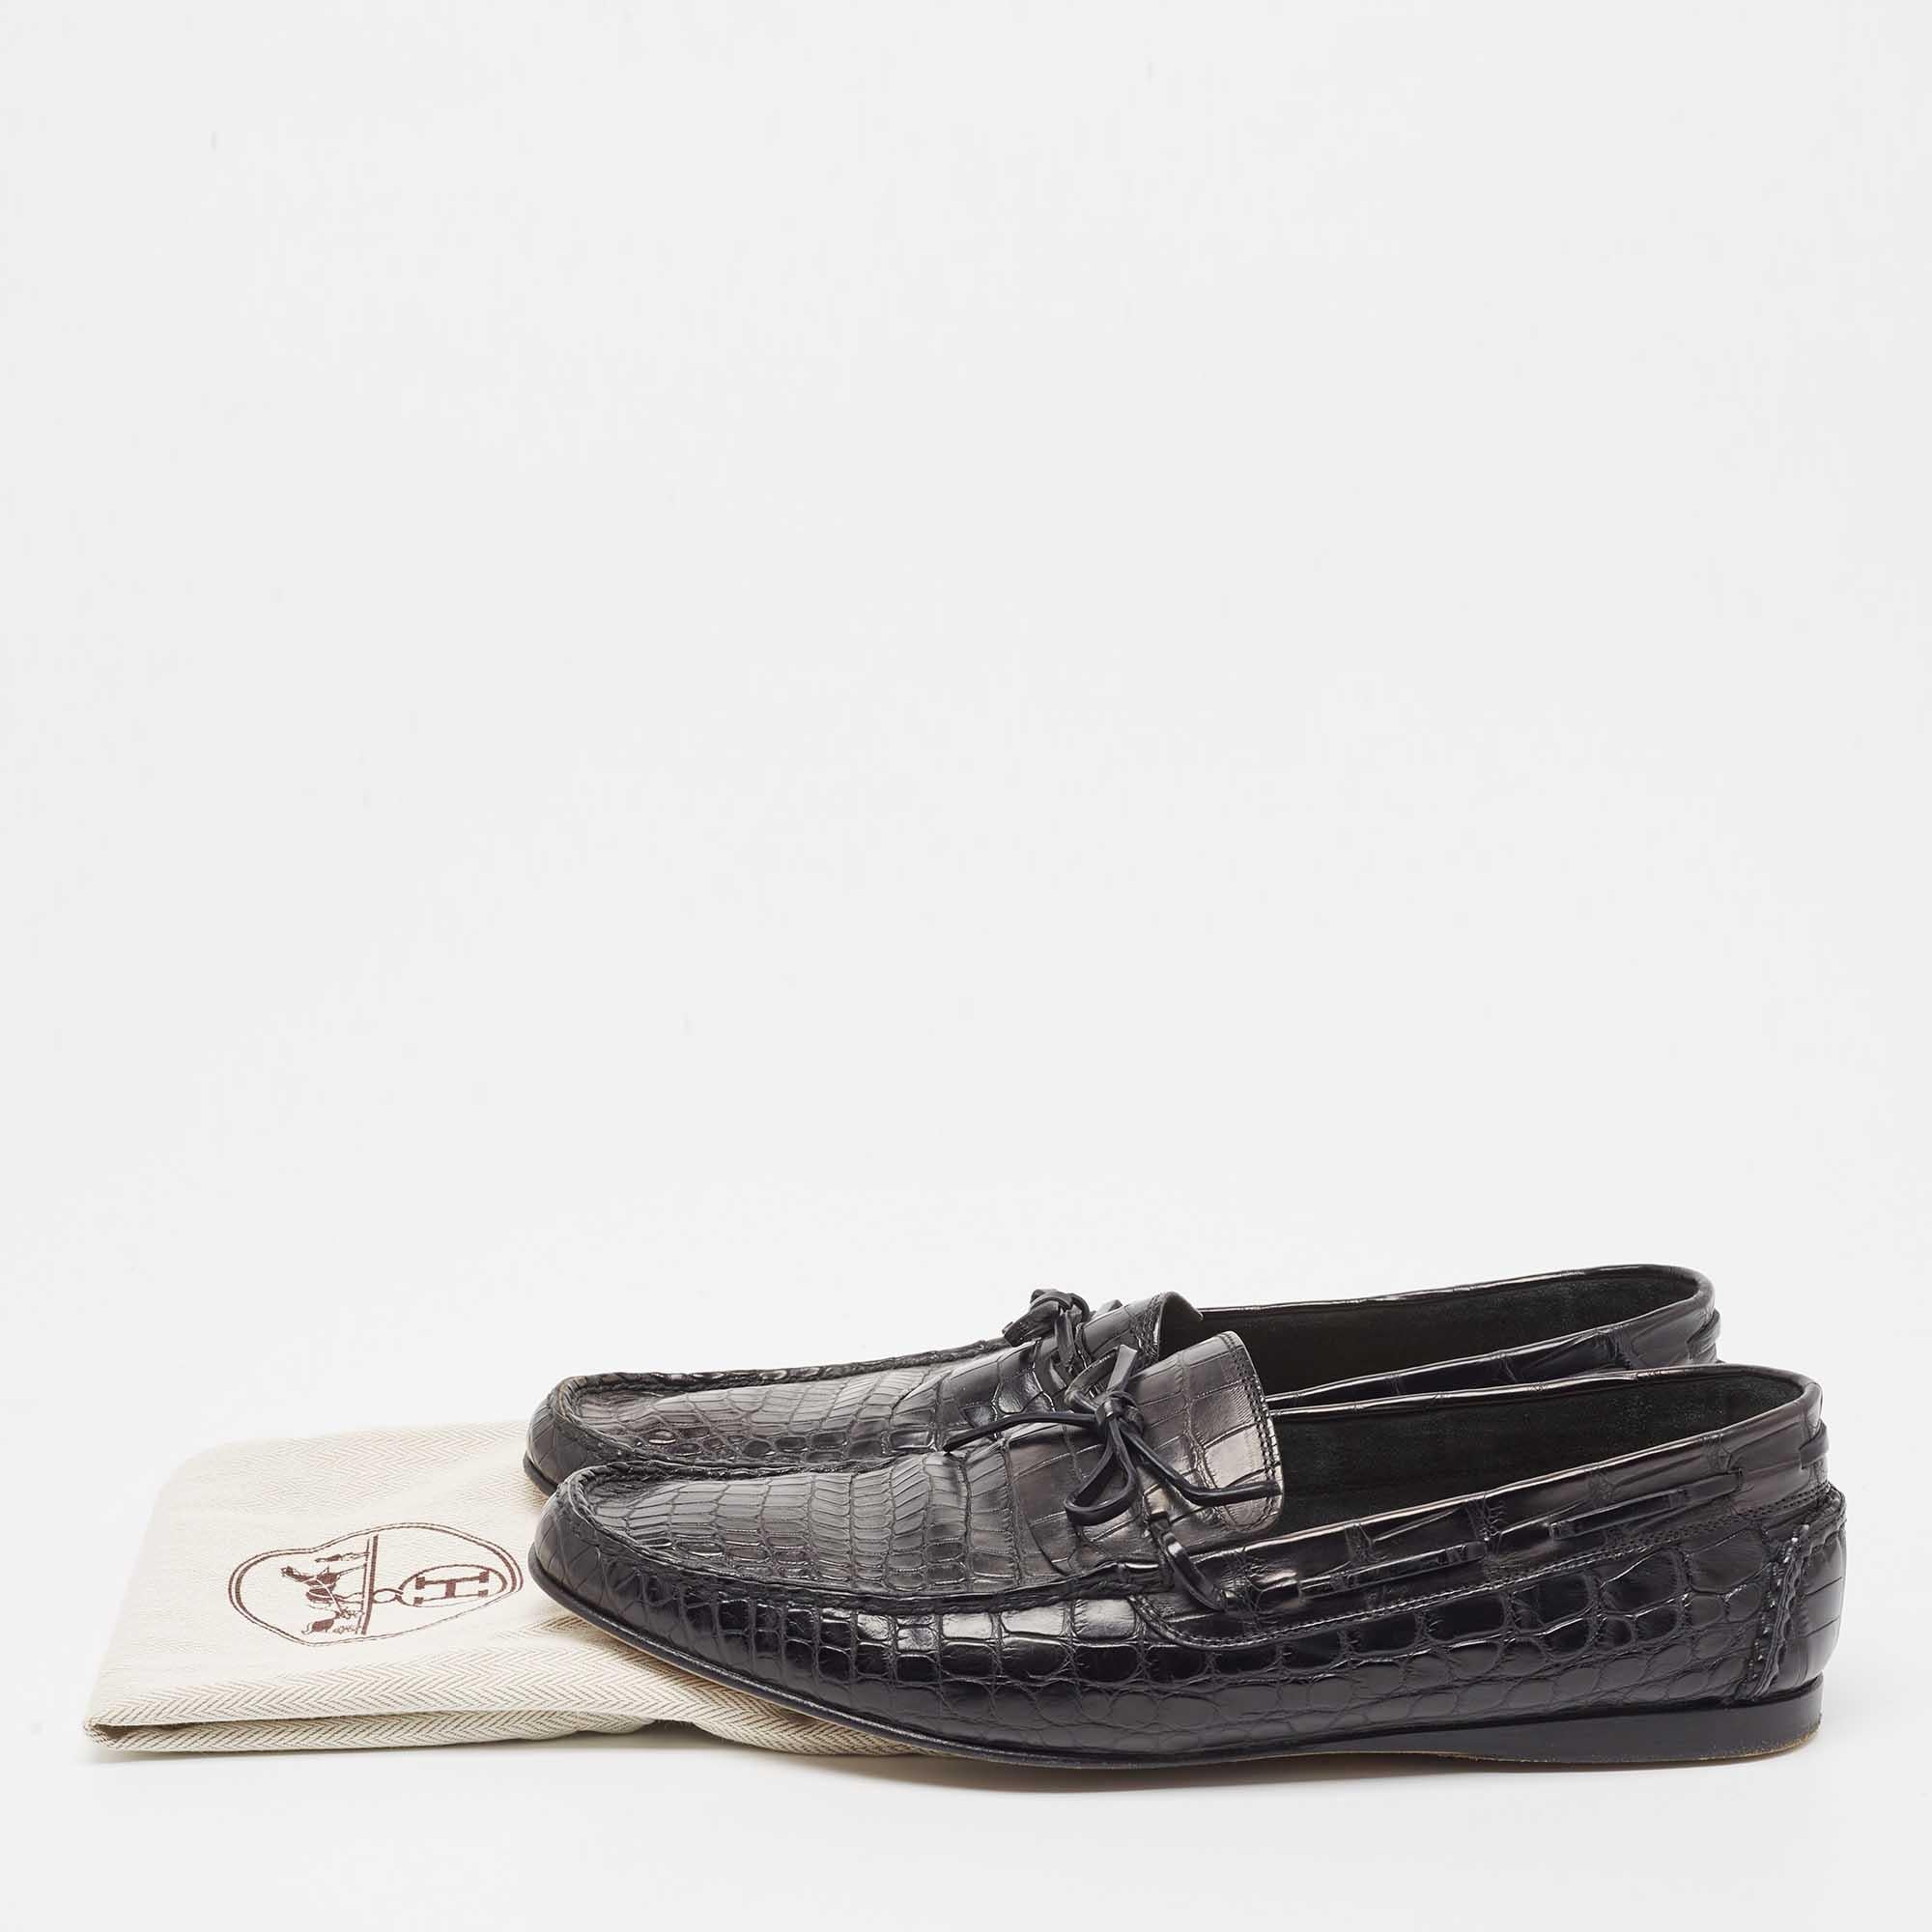 Hermes Black Alligator Bow Slip On Loafers Size 43 5